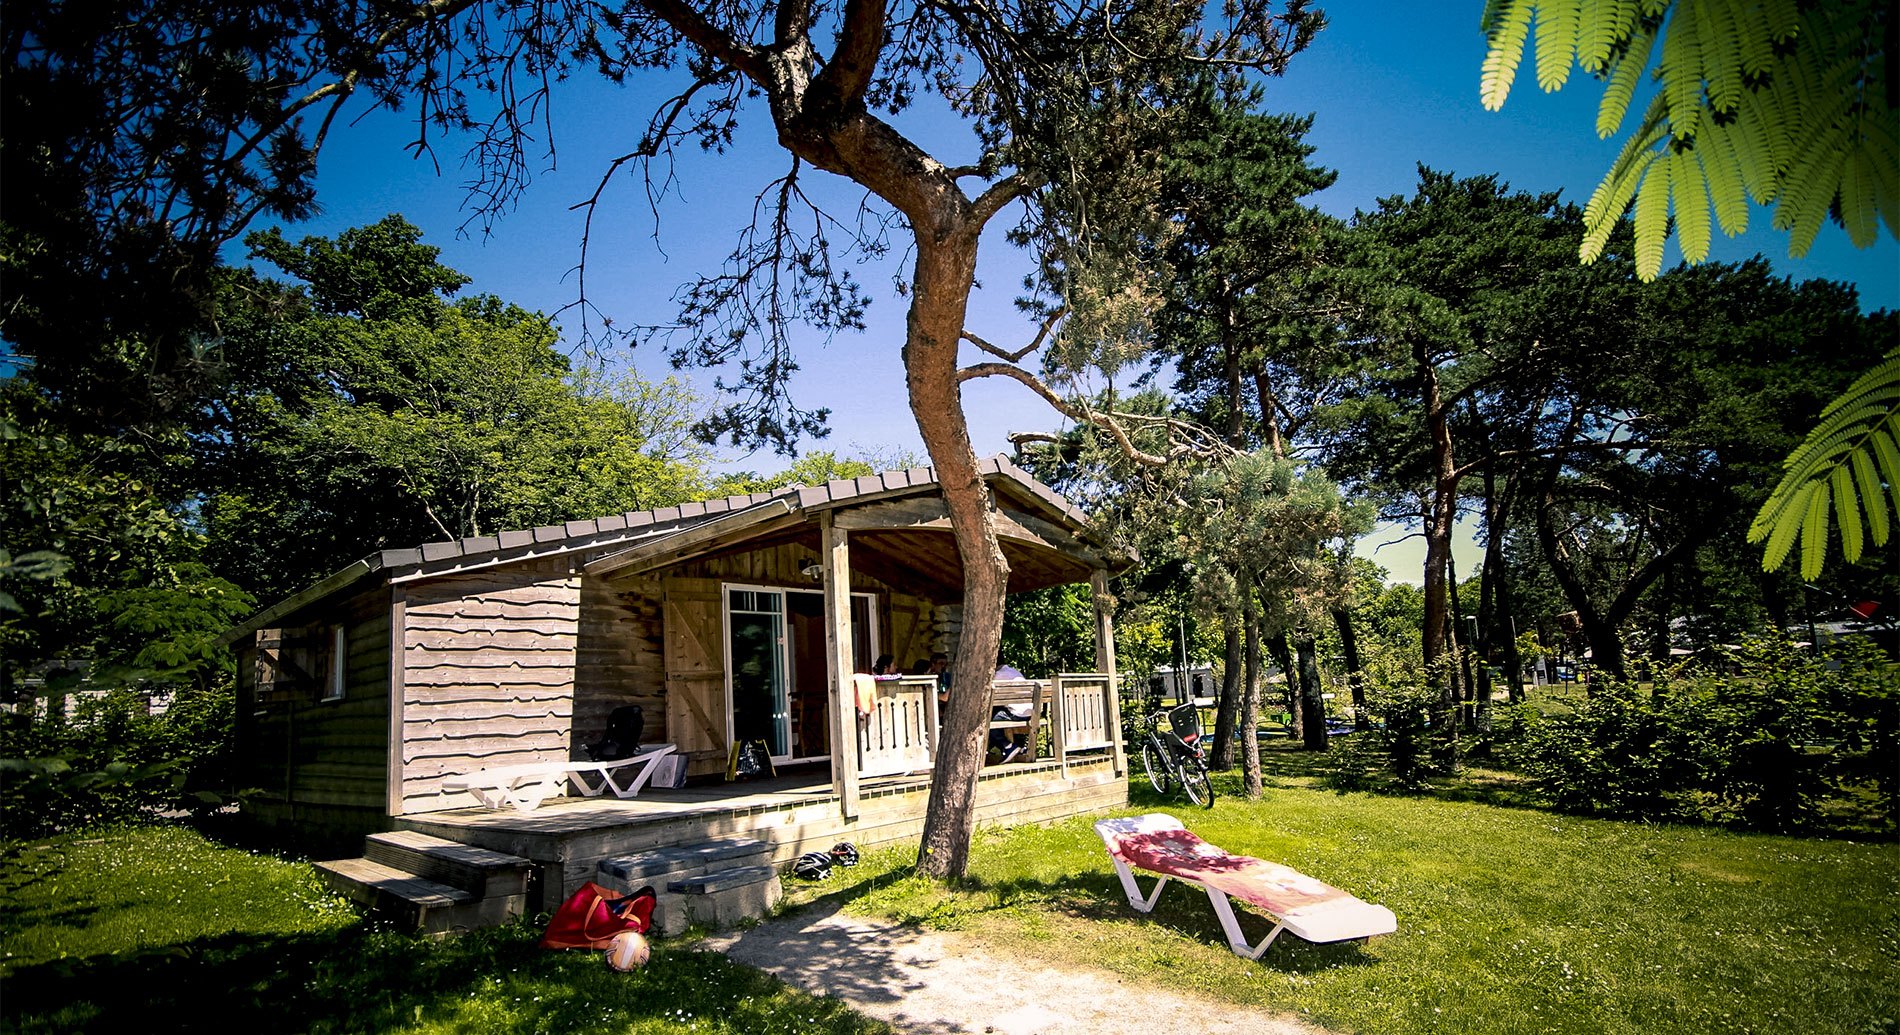 Comment choisir le meilleur camping pour ses vacances près de Nantes